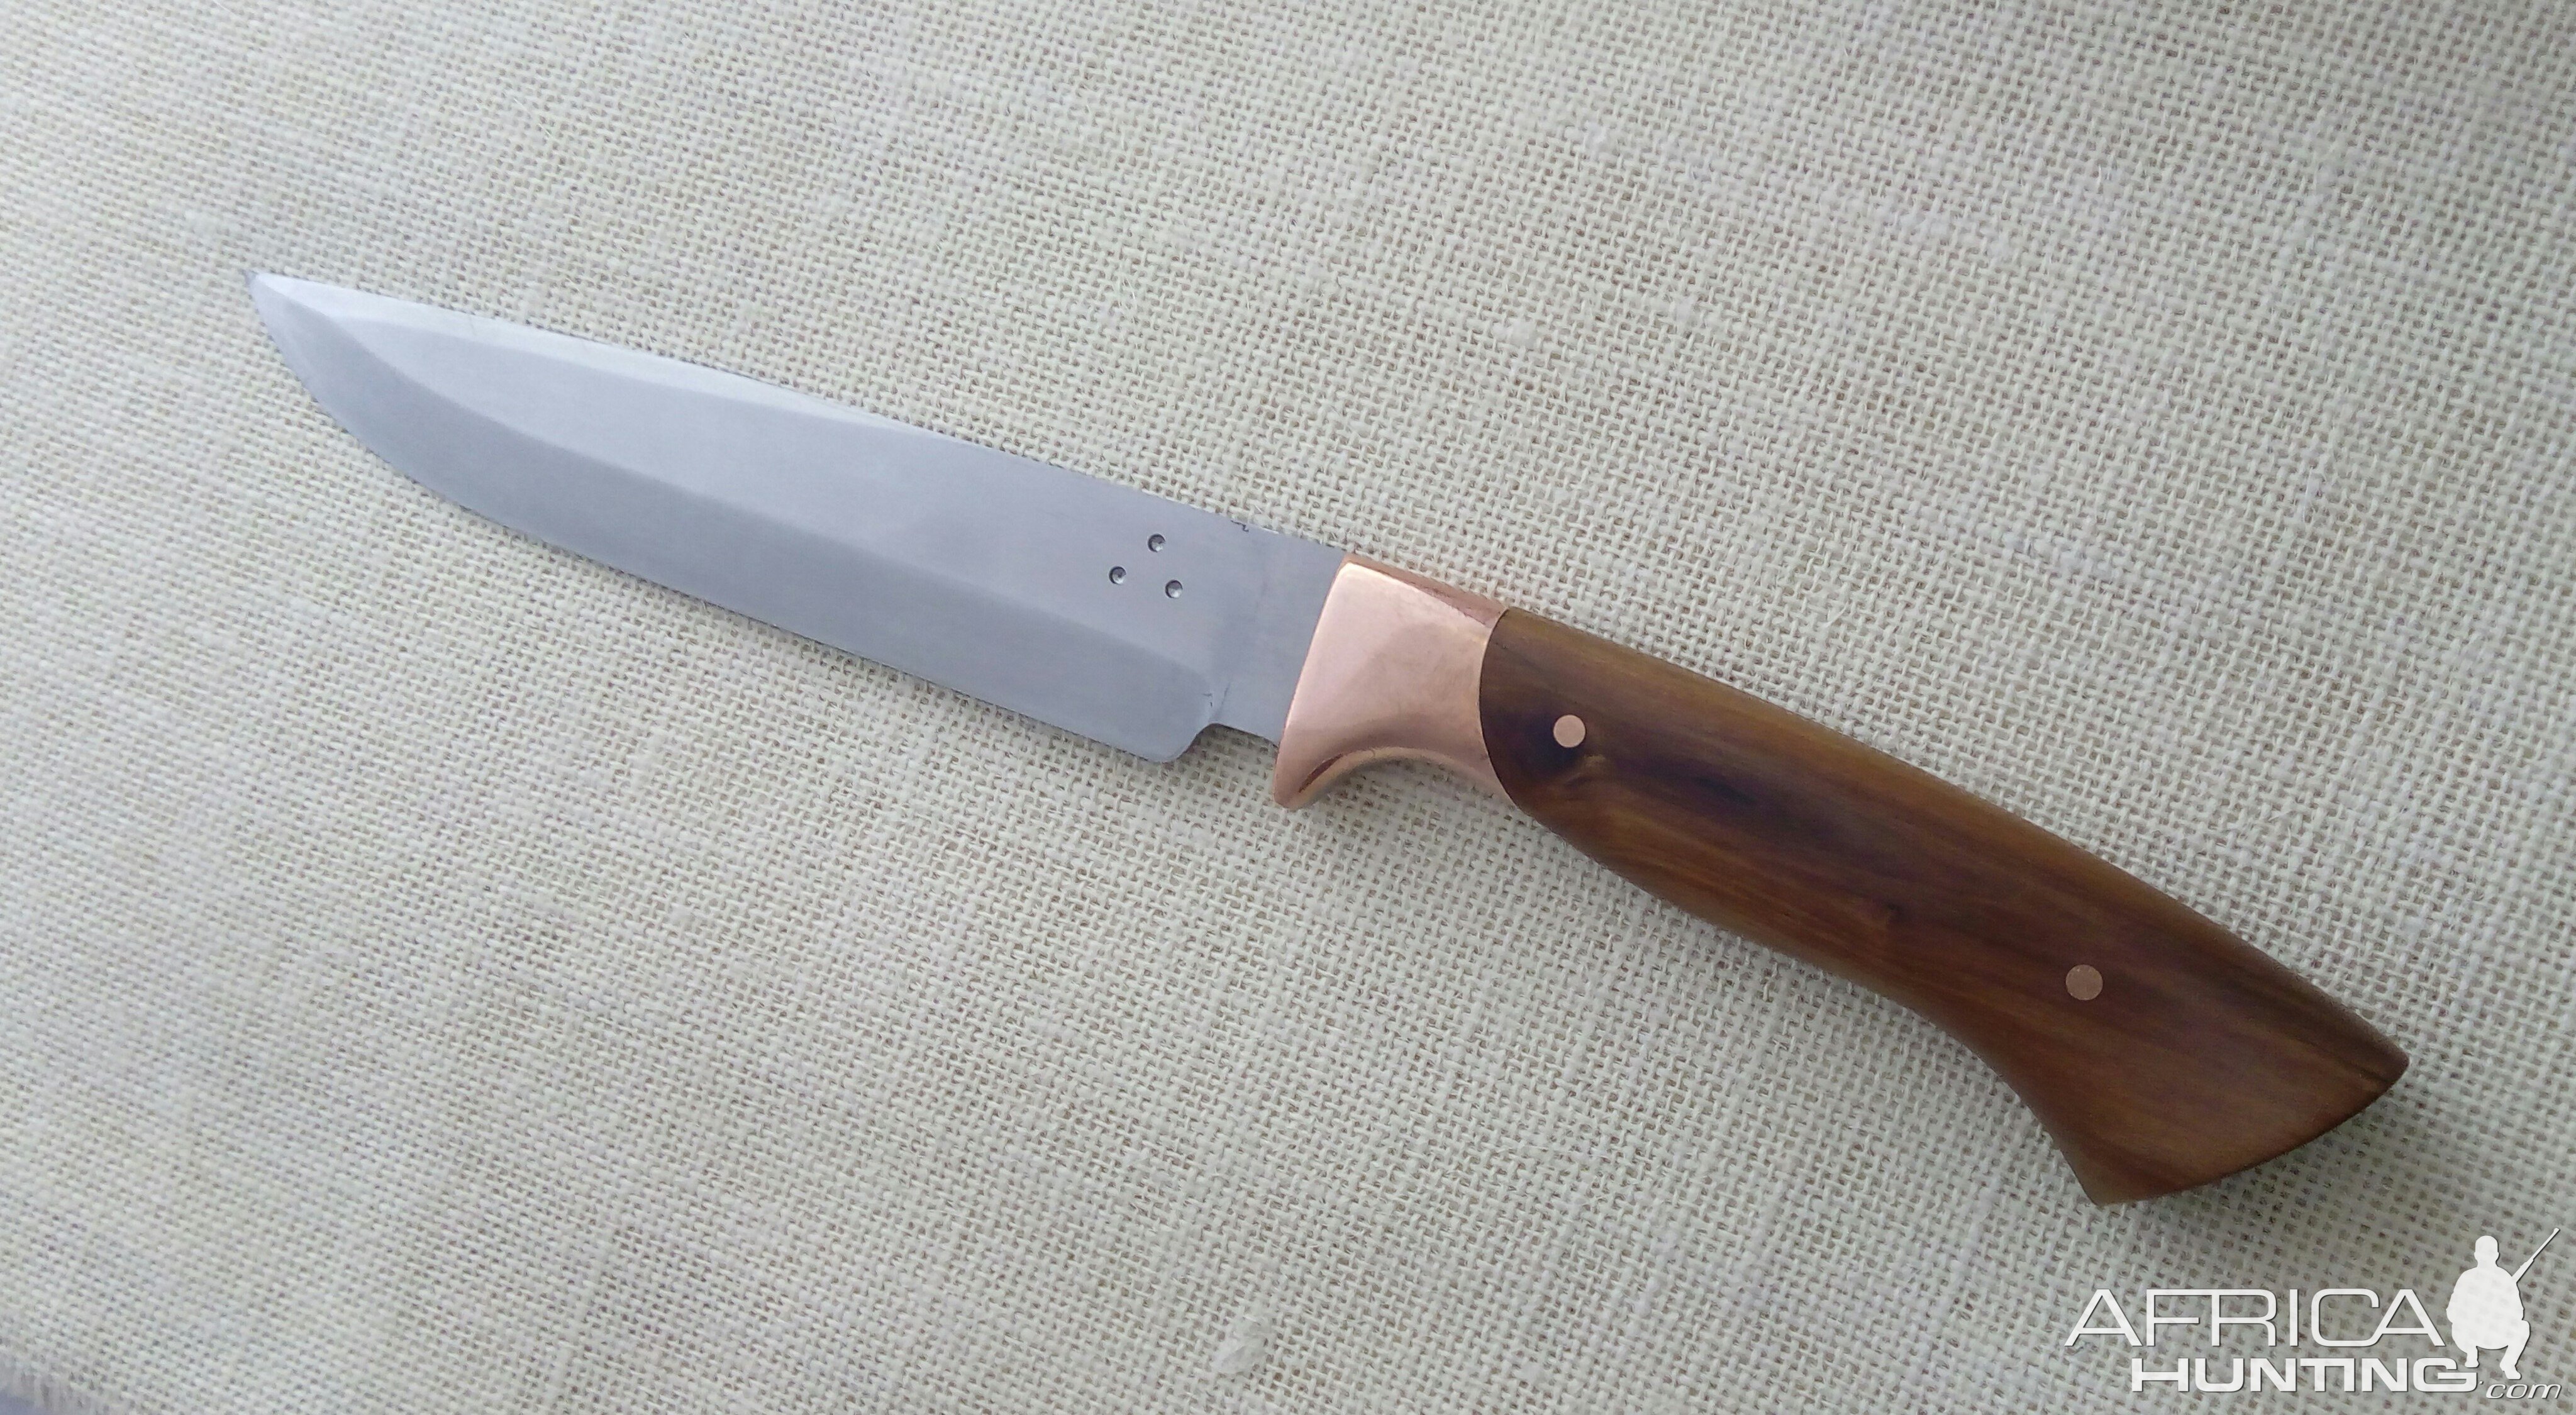 Skinner Knive